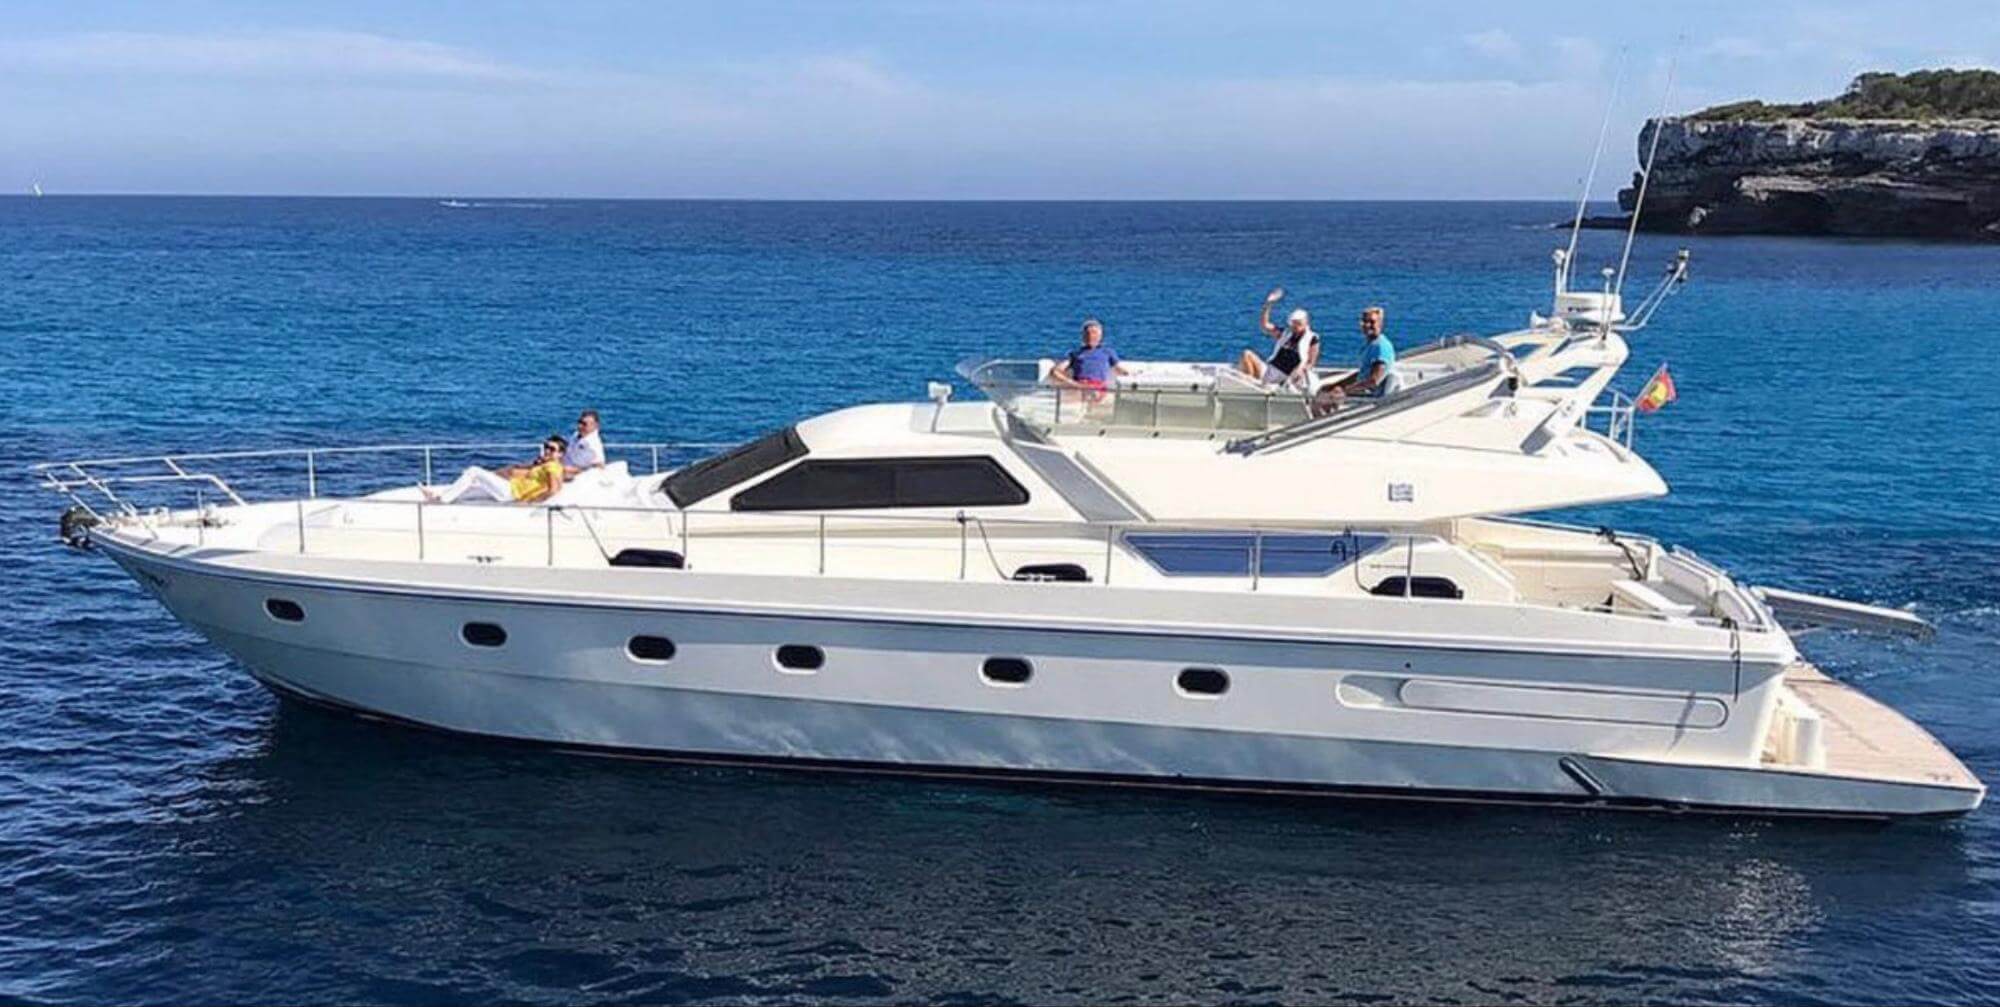 1996 Ferretti 175 Luxury Yacht out in the ocean